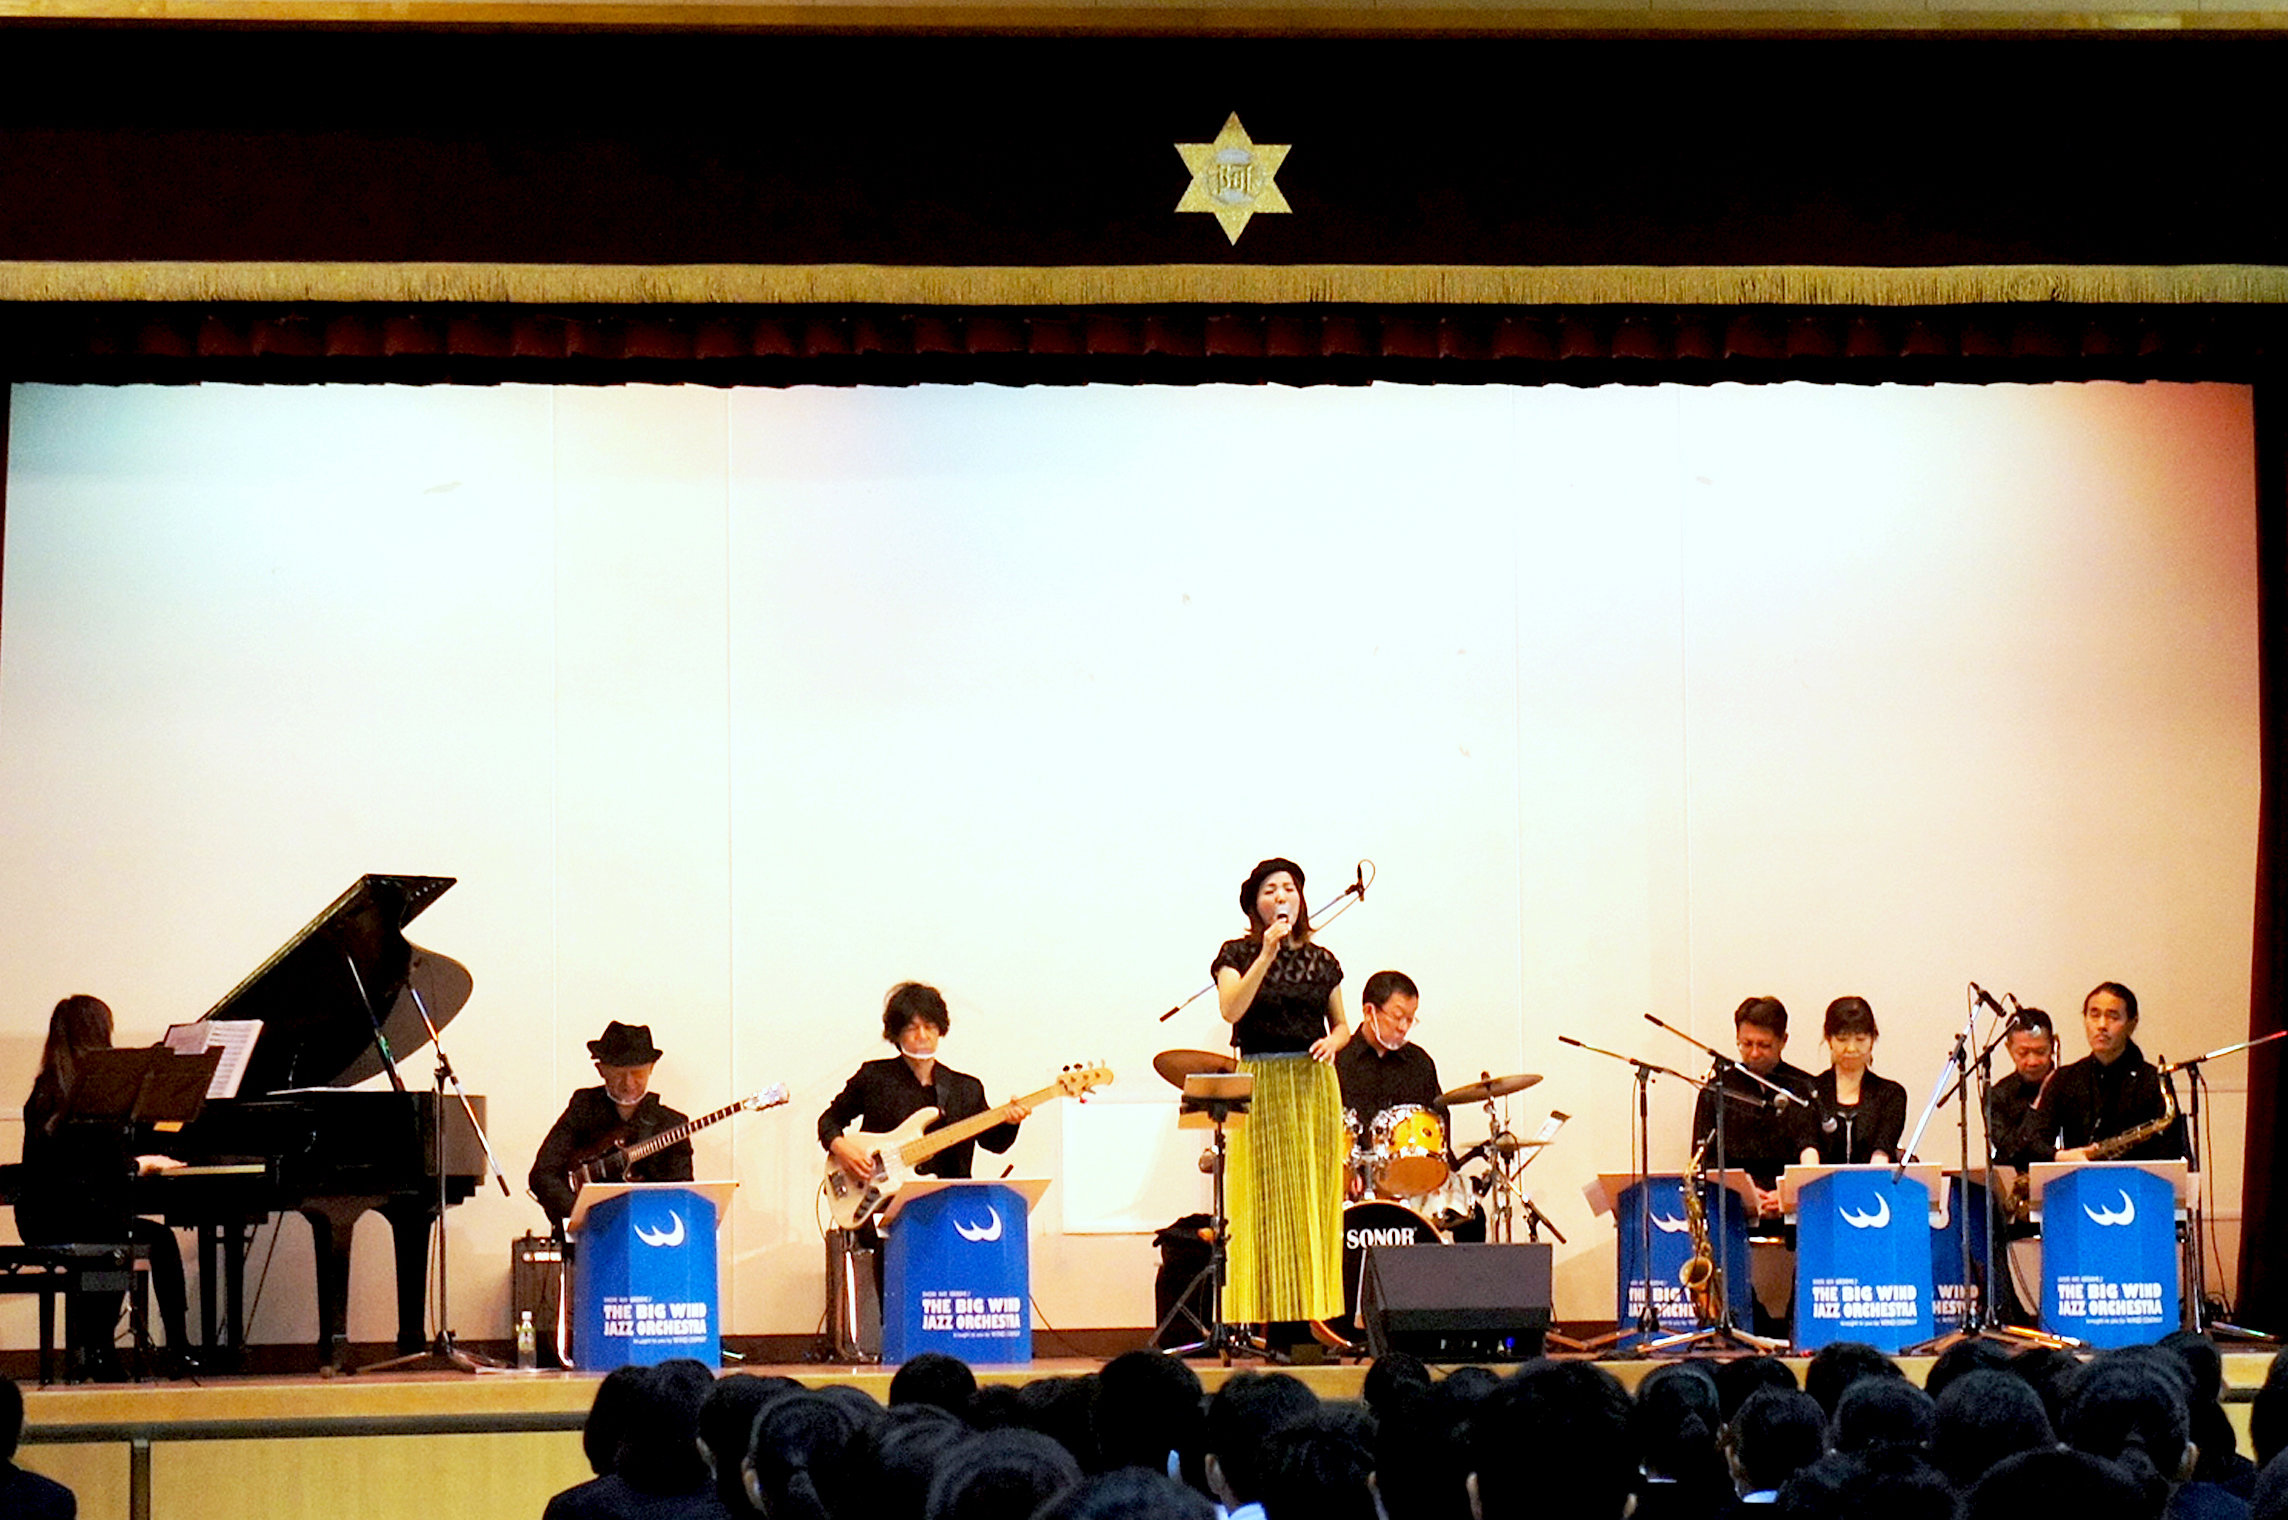 【実績】音楽鑑賞会 2021年11月 大阪市立 阿倍野中学校 BIG WIND JAZZ ORCHESTRA (JAZZ) 更新しました。